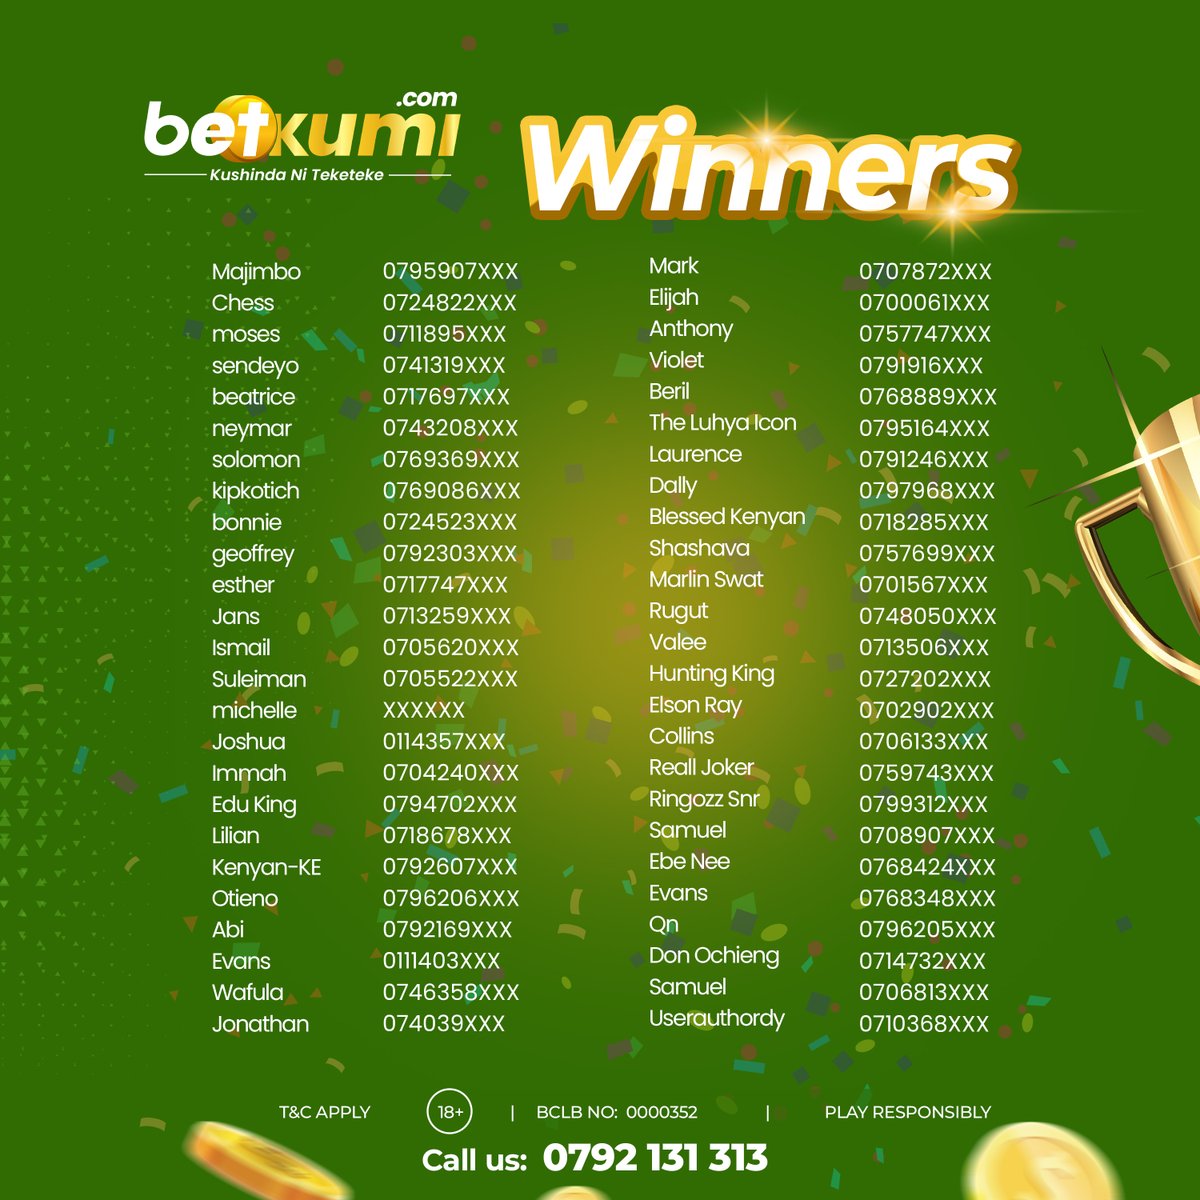 🎉 Announcing our Winners for the Free Bet! 🏆 Share screenshot of your favourite game and unaweza kuwa the lucky player tunareward 🎁 bonus ingine ya kuskuma wiki 💰 Deposit, Play & Win: betkumi.com #ChachishaBet 🚀